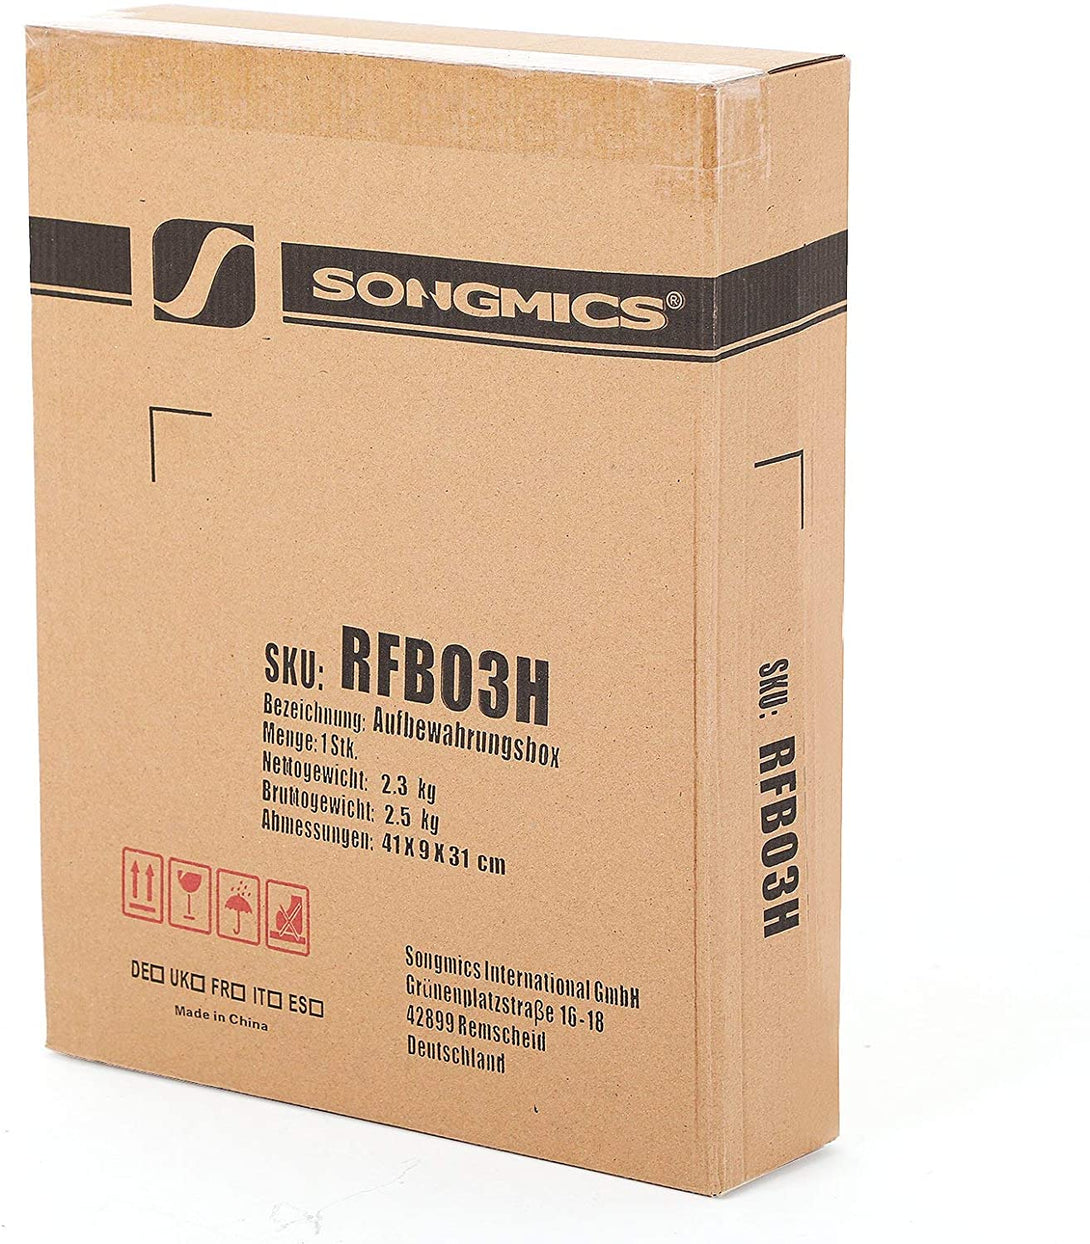 3 zložljive škatle za shranjevanje 40 x 30 x 25 cm, črne | SONGMICS-Vasdom.si